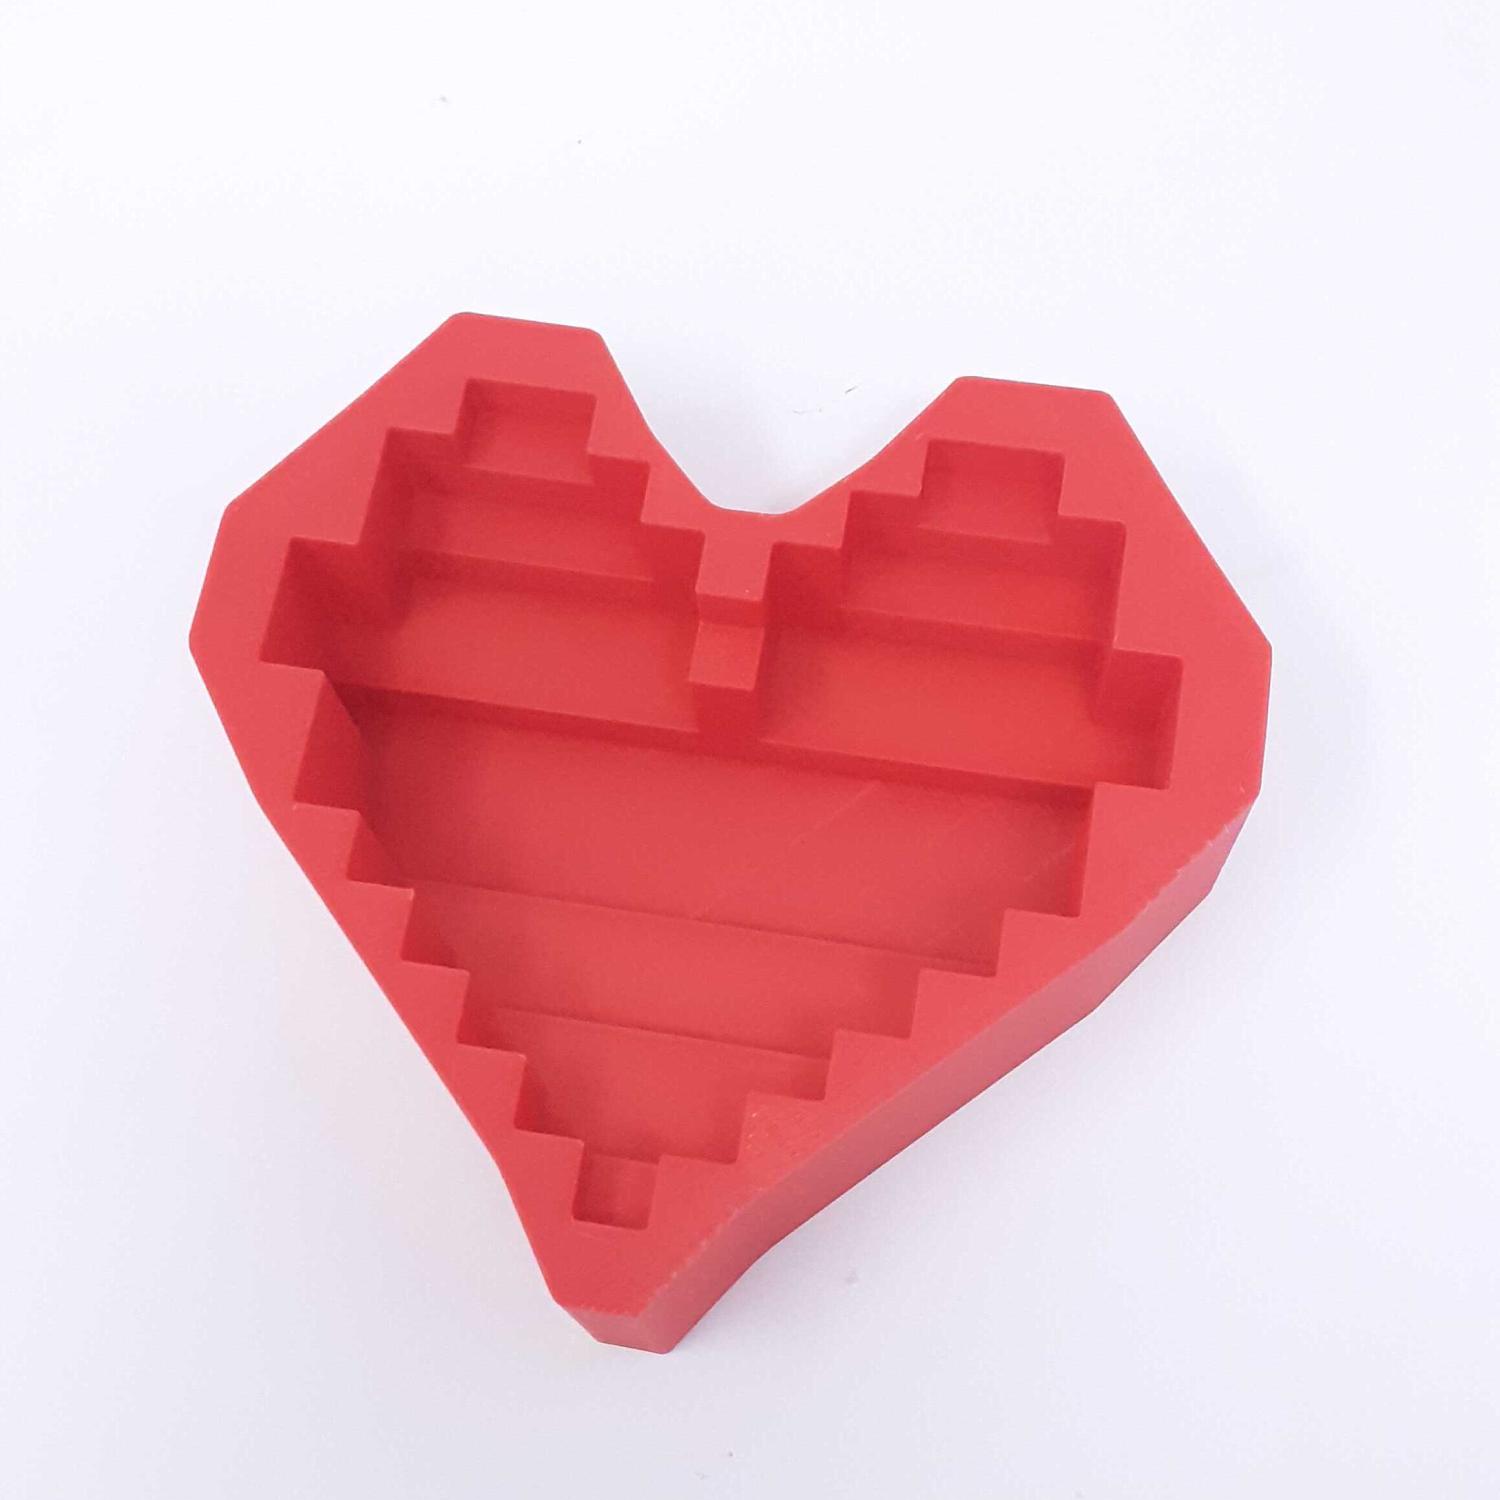 HEART LOGIC PUZZLE SET 3d model